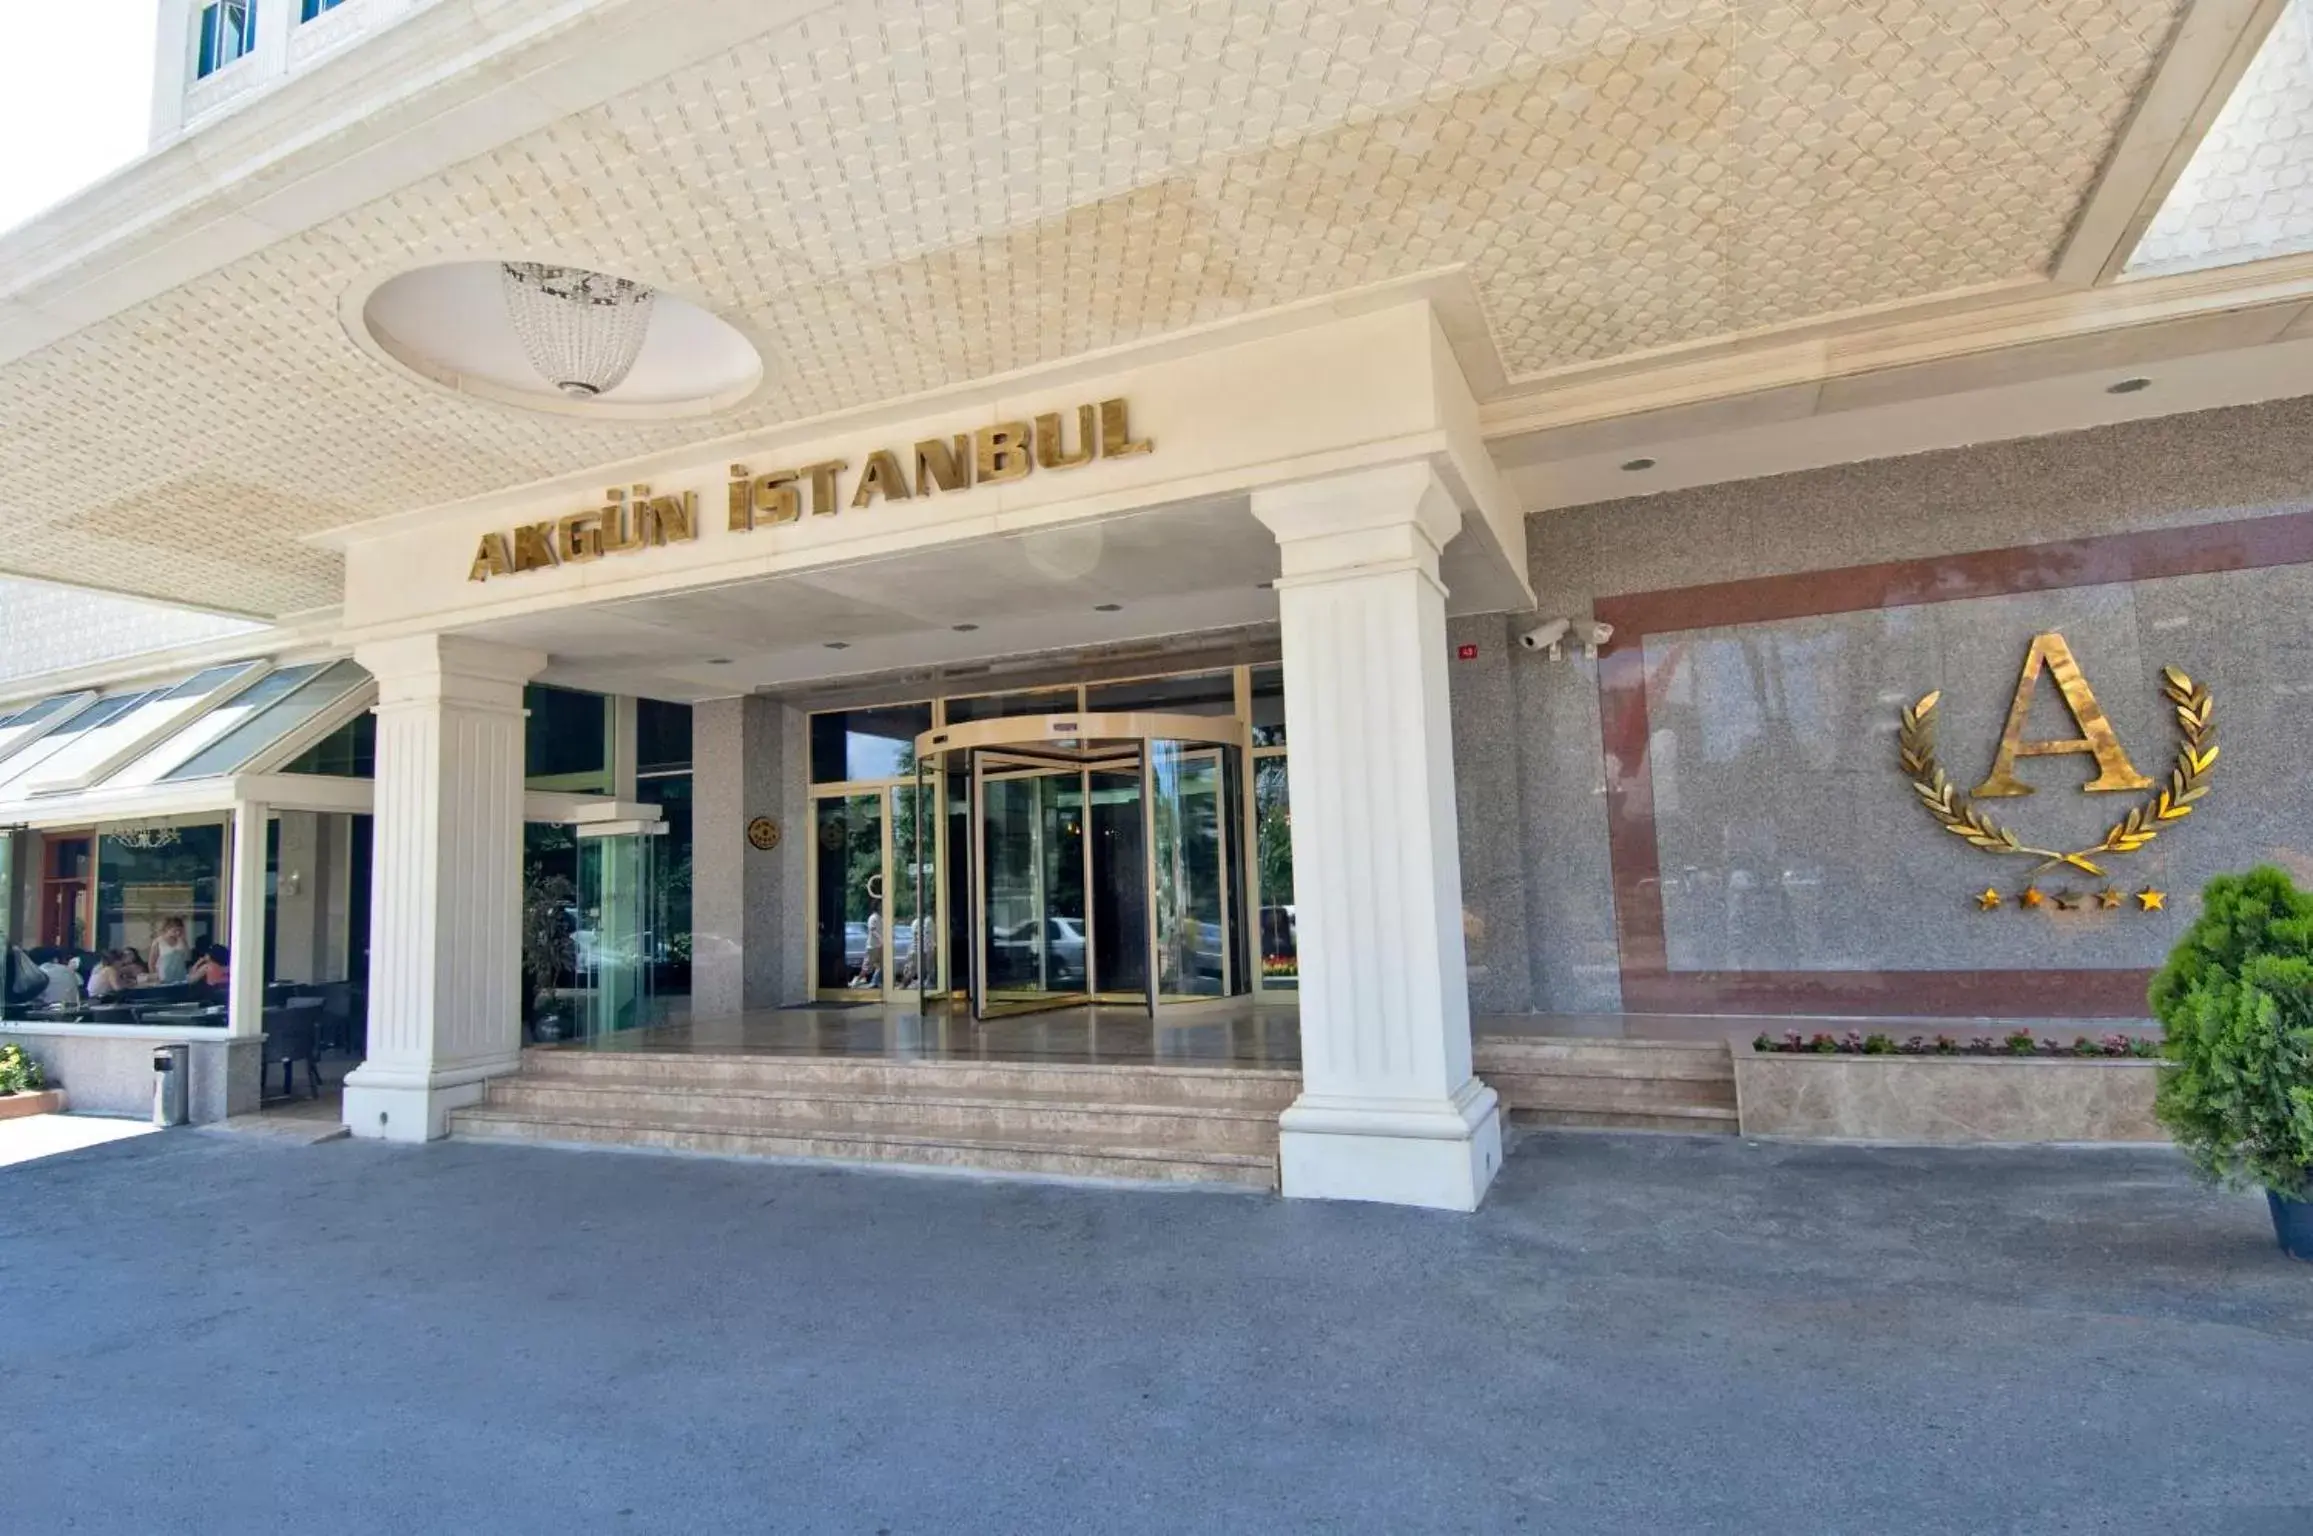 Facade/entrance in Akgun Istanbul Hotel